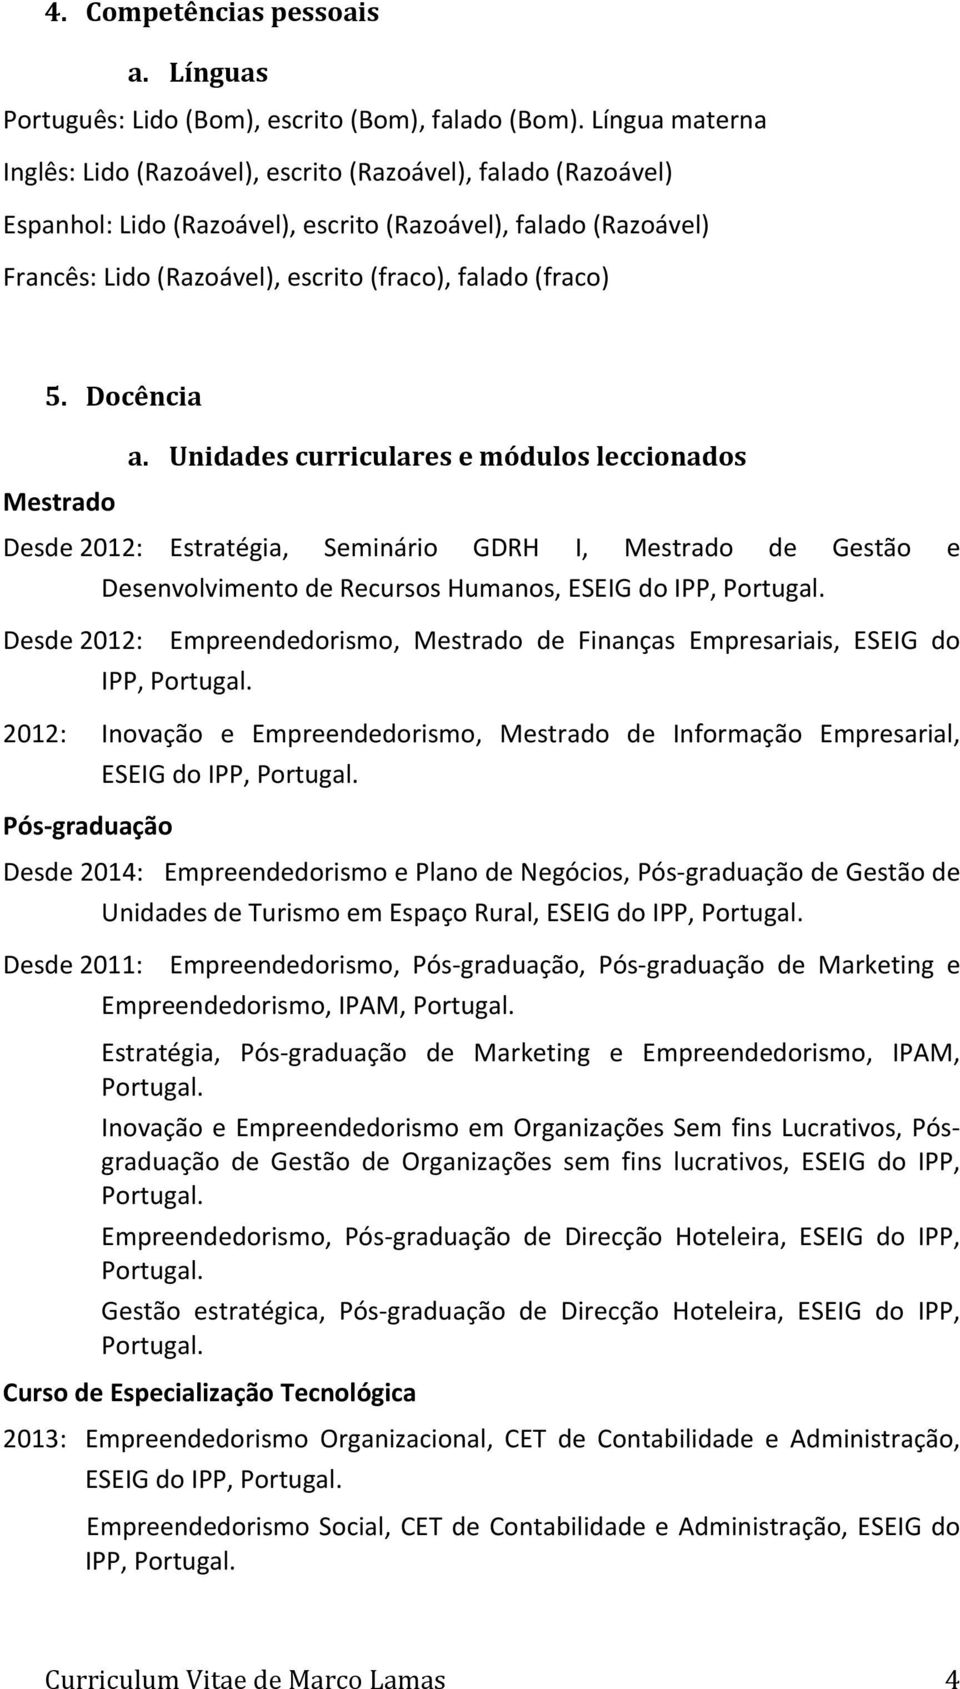 (fraco) 5. Docência Mestrado a. Unidades curriculares e módulos leccionados Desde 2012: Estratégia, Seminário GDRH I, Mestrado de Gestão e Desenvolvimento de Recursos Humanos, ESEIG do IPP, Portugal.